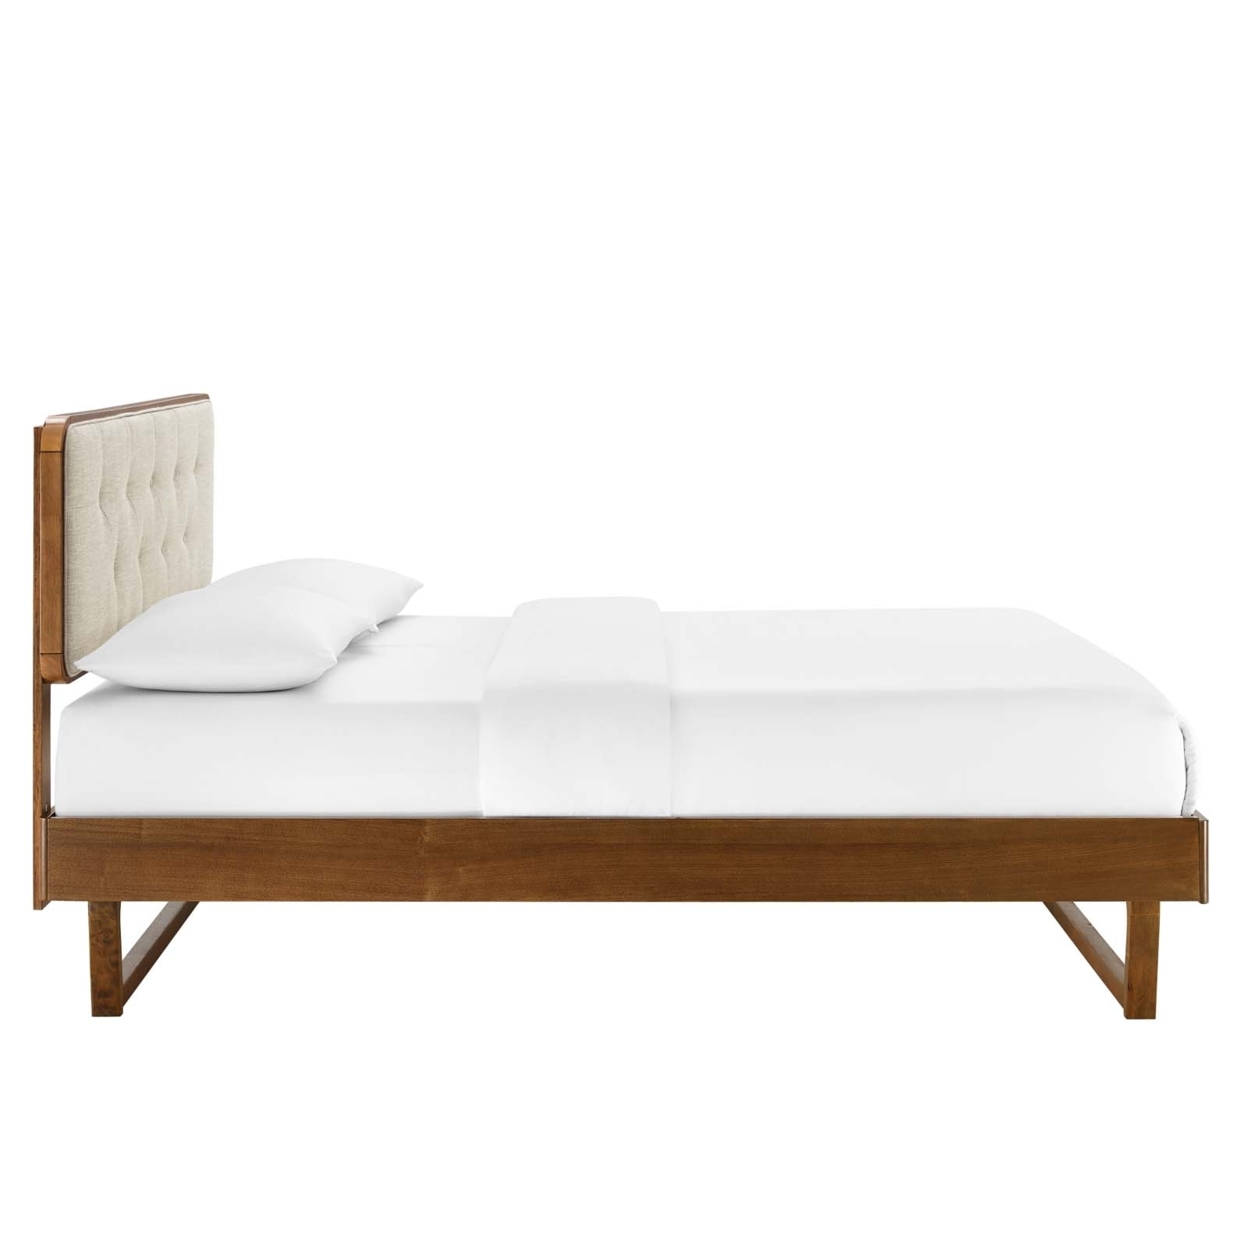 Bridgette Queen Wood Platform Bed With Angular Frame, Walnut Beige